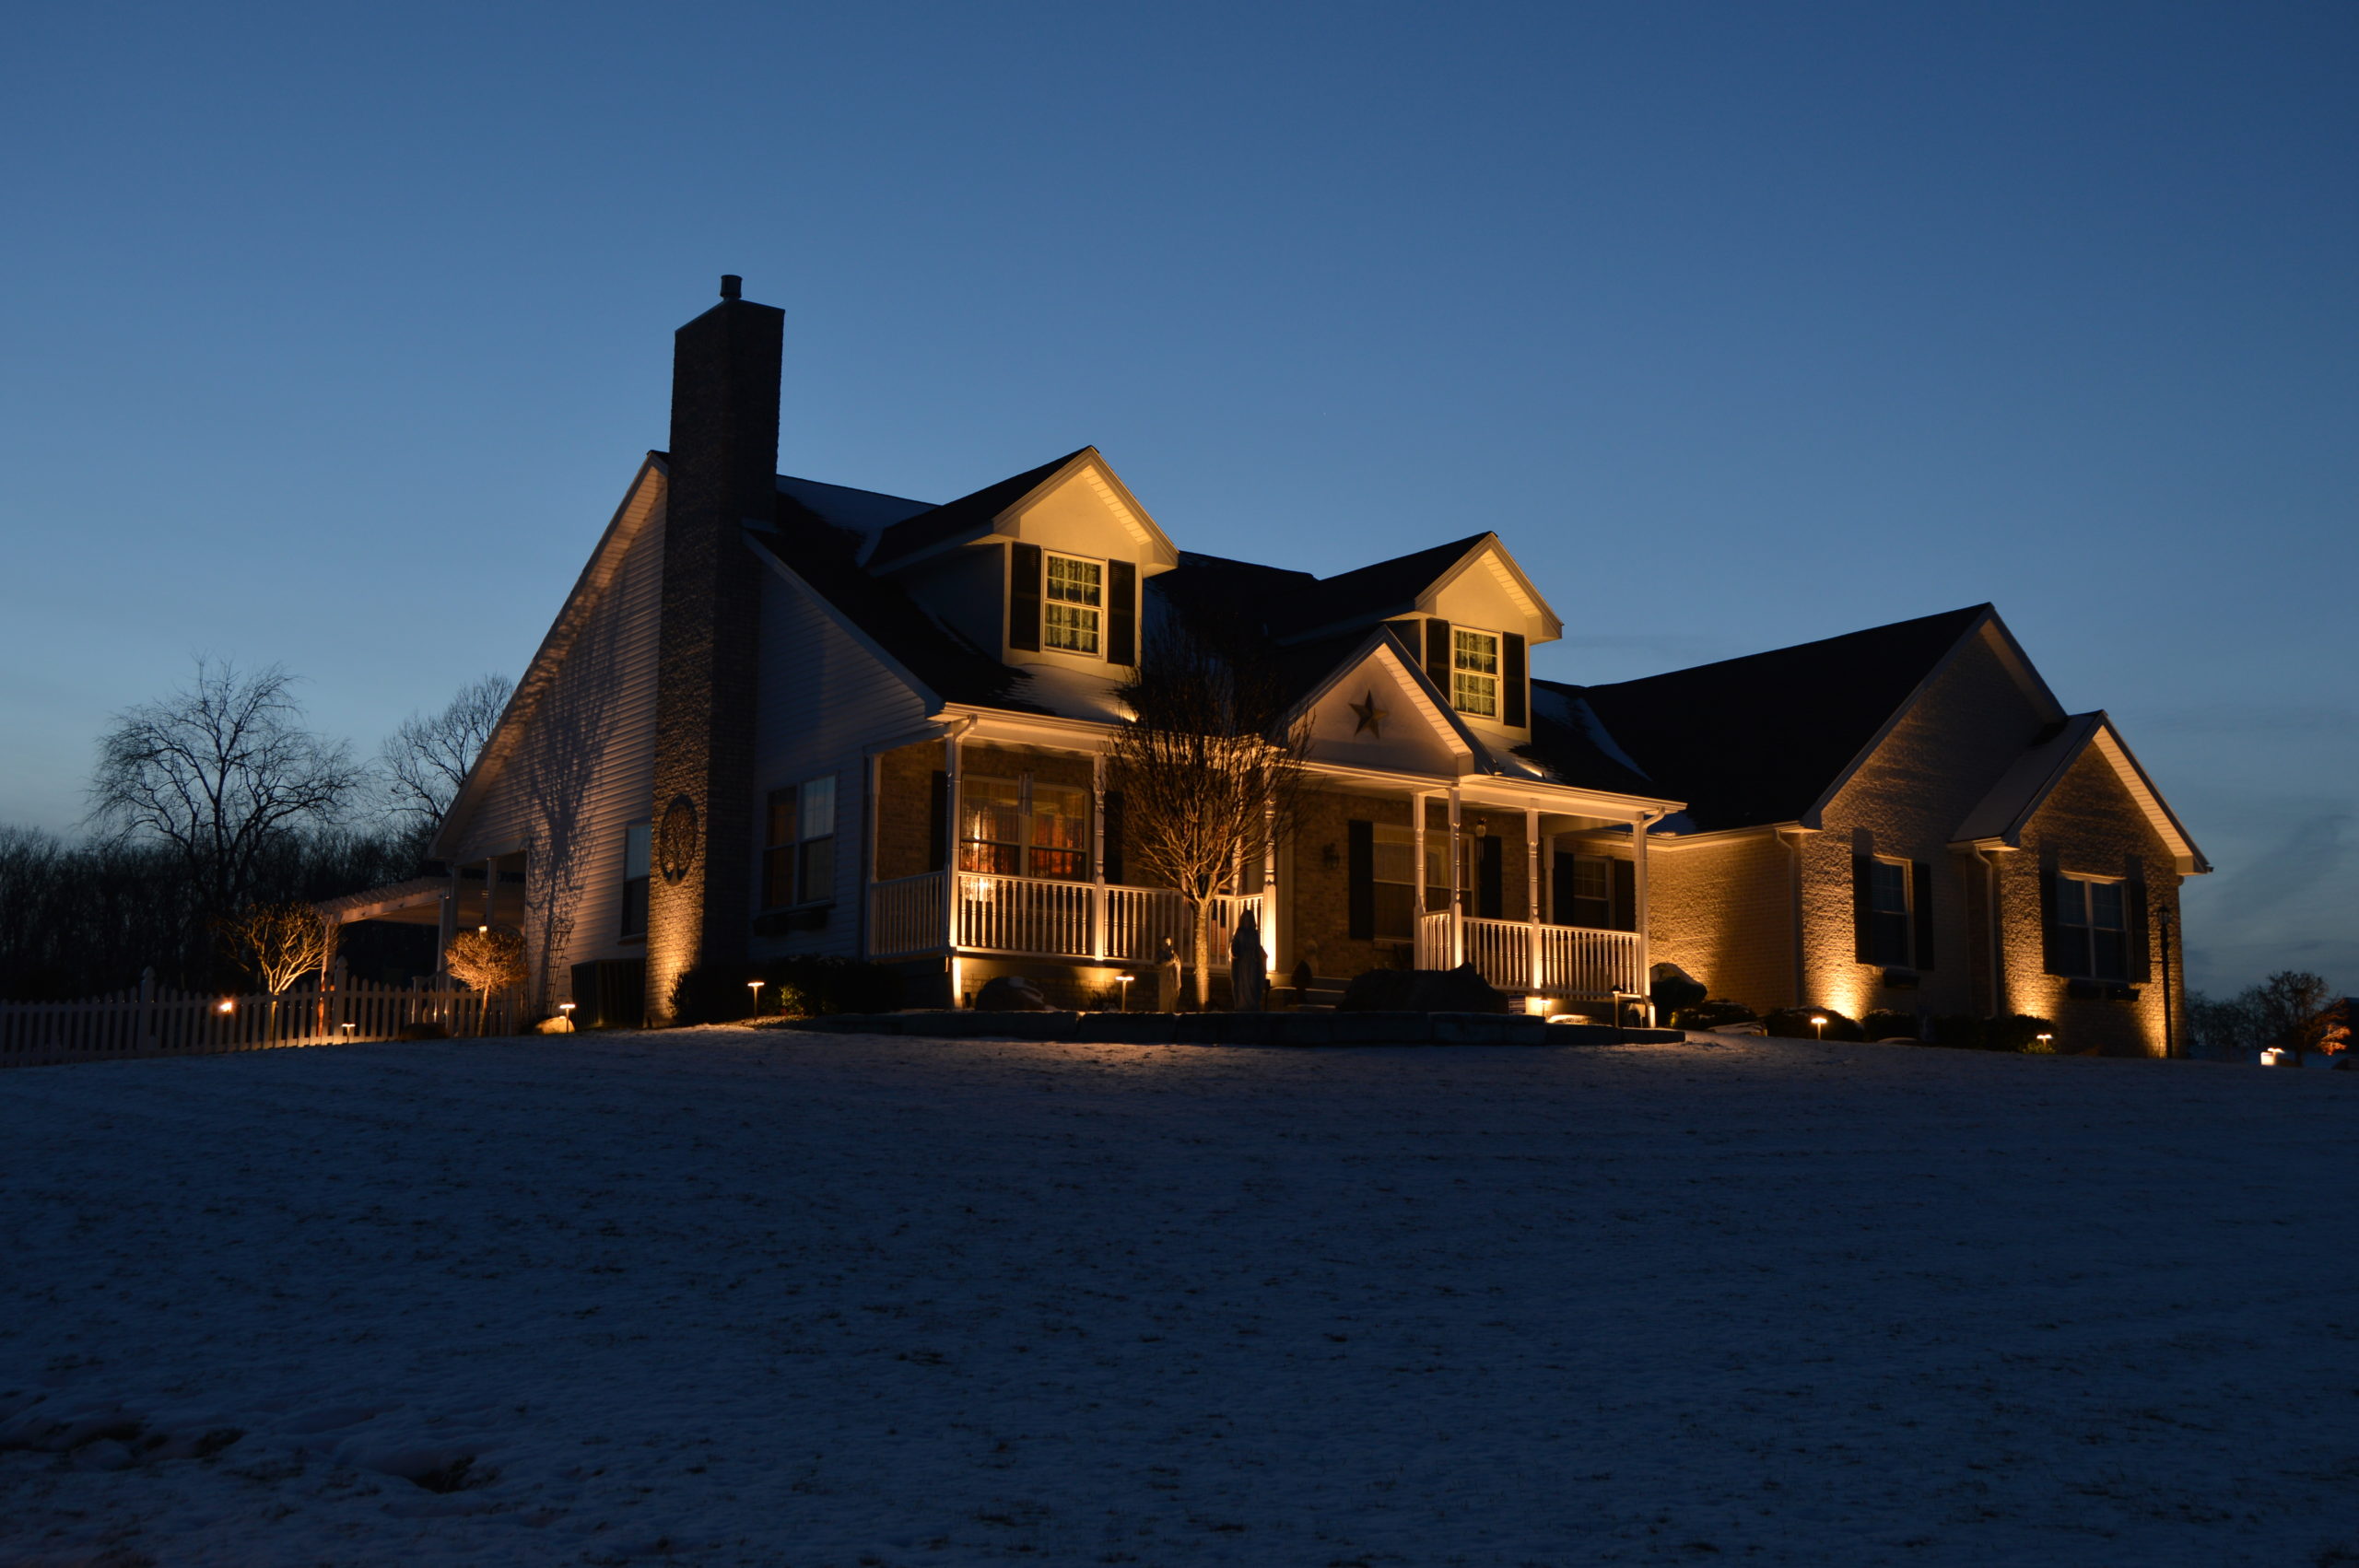 Illuminated house with hardscape and spotlighting